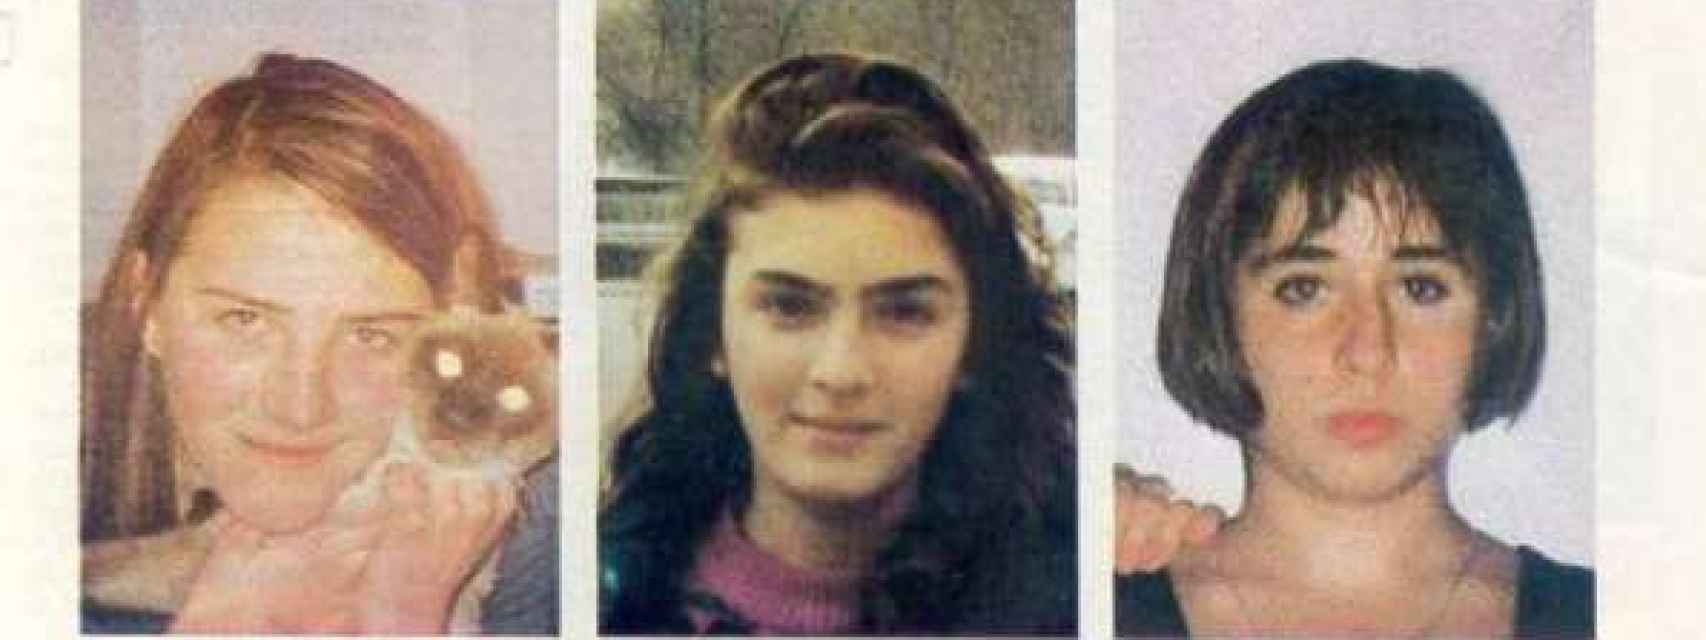 Las tres niñas desaparecieron el 13 de noviembre de 1992.